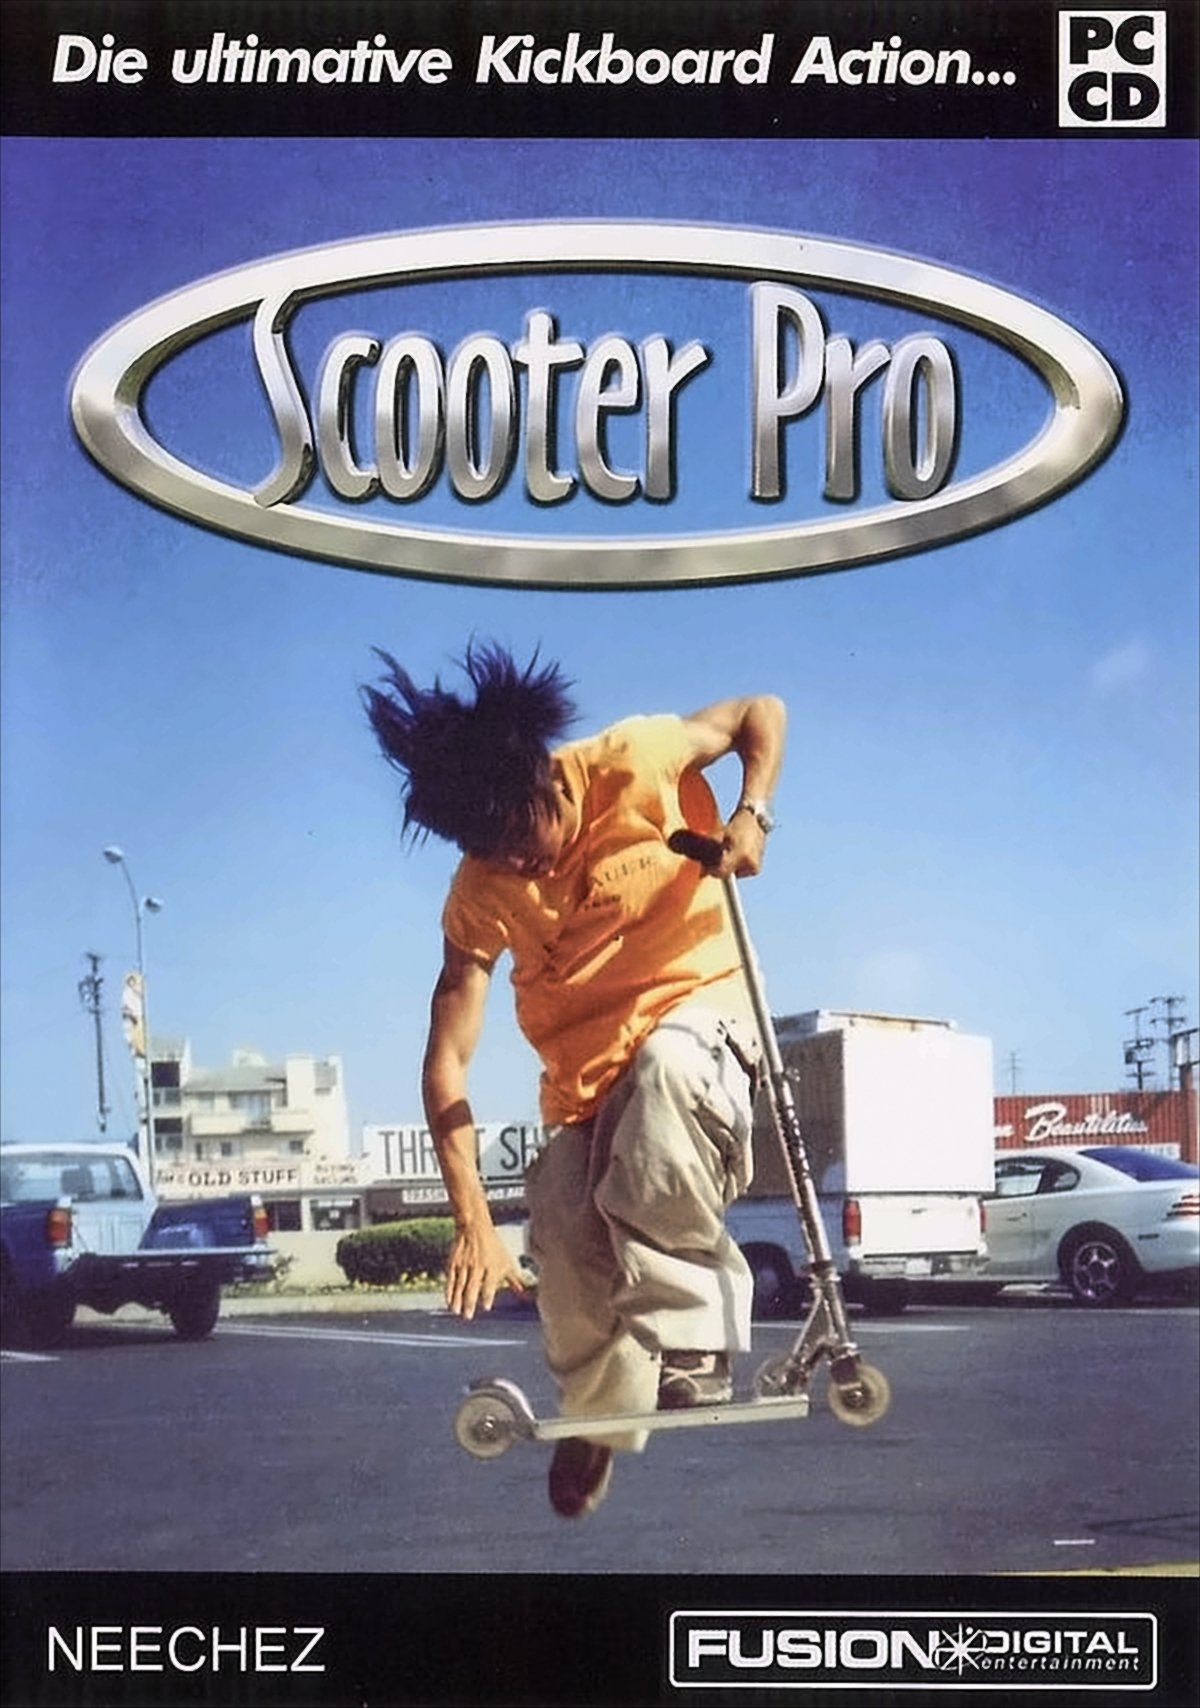 Scooter Pro von Diverse